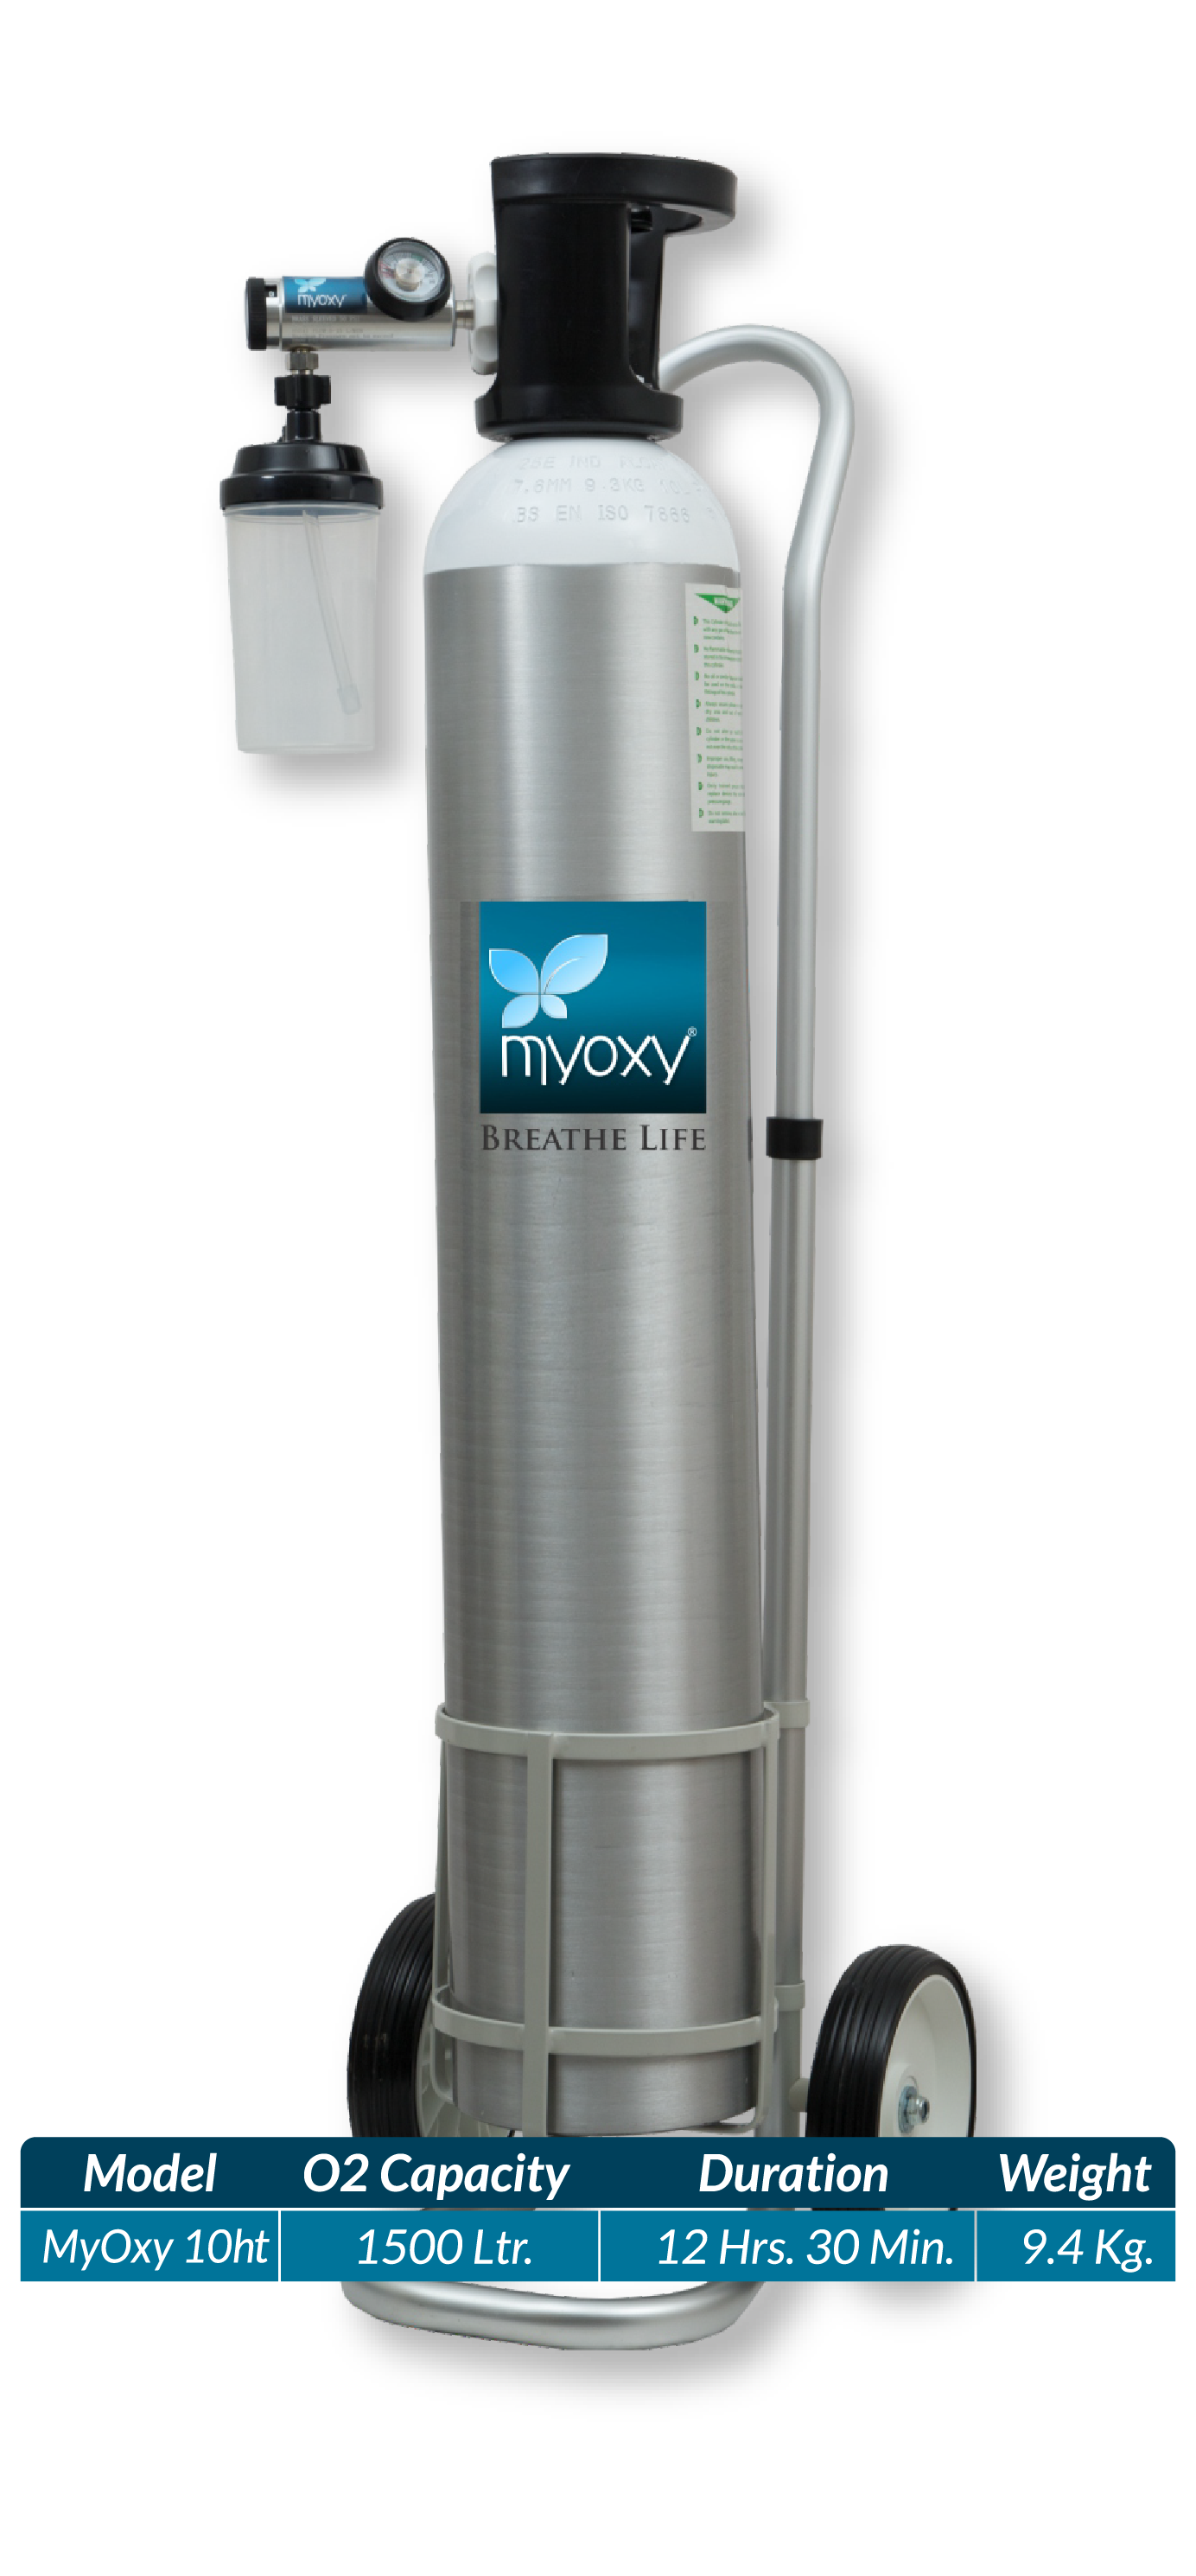 MyOxy portable oxygen kit MyOxy 10ht